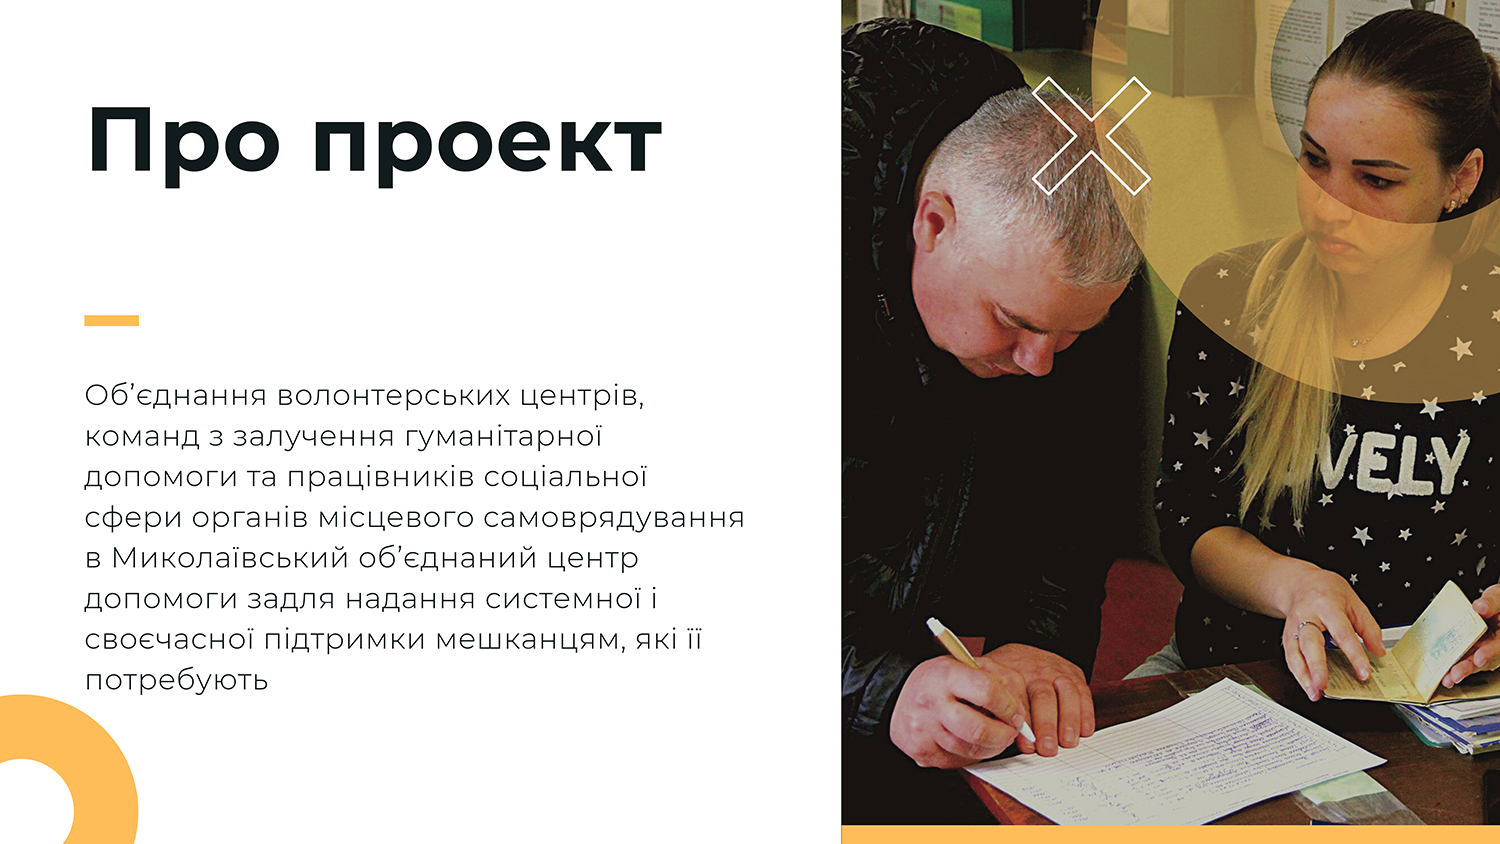 Створення волонтерського штабу в Миколаєві